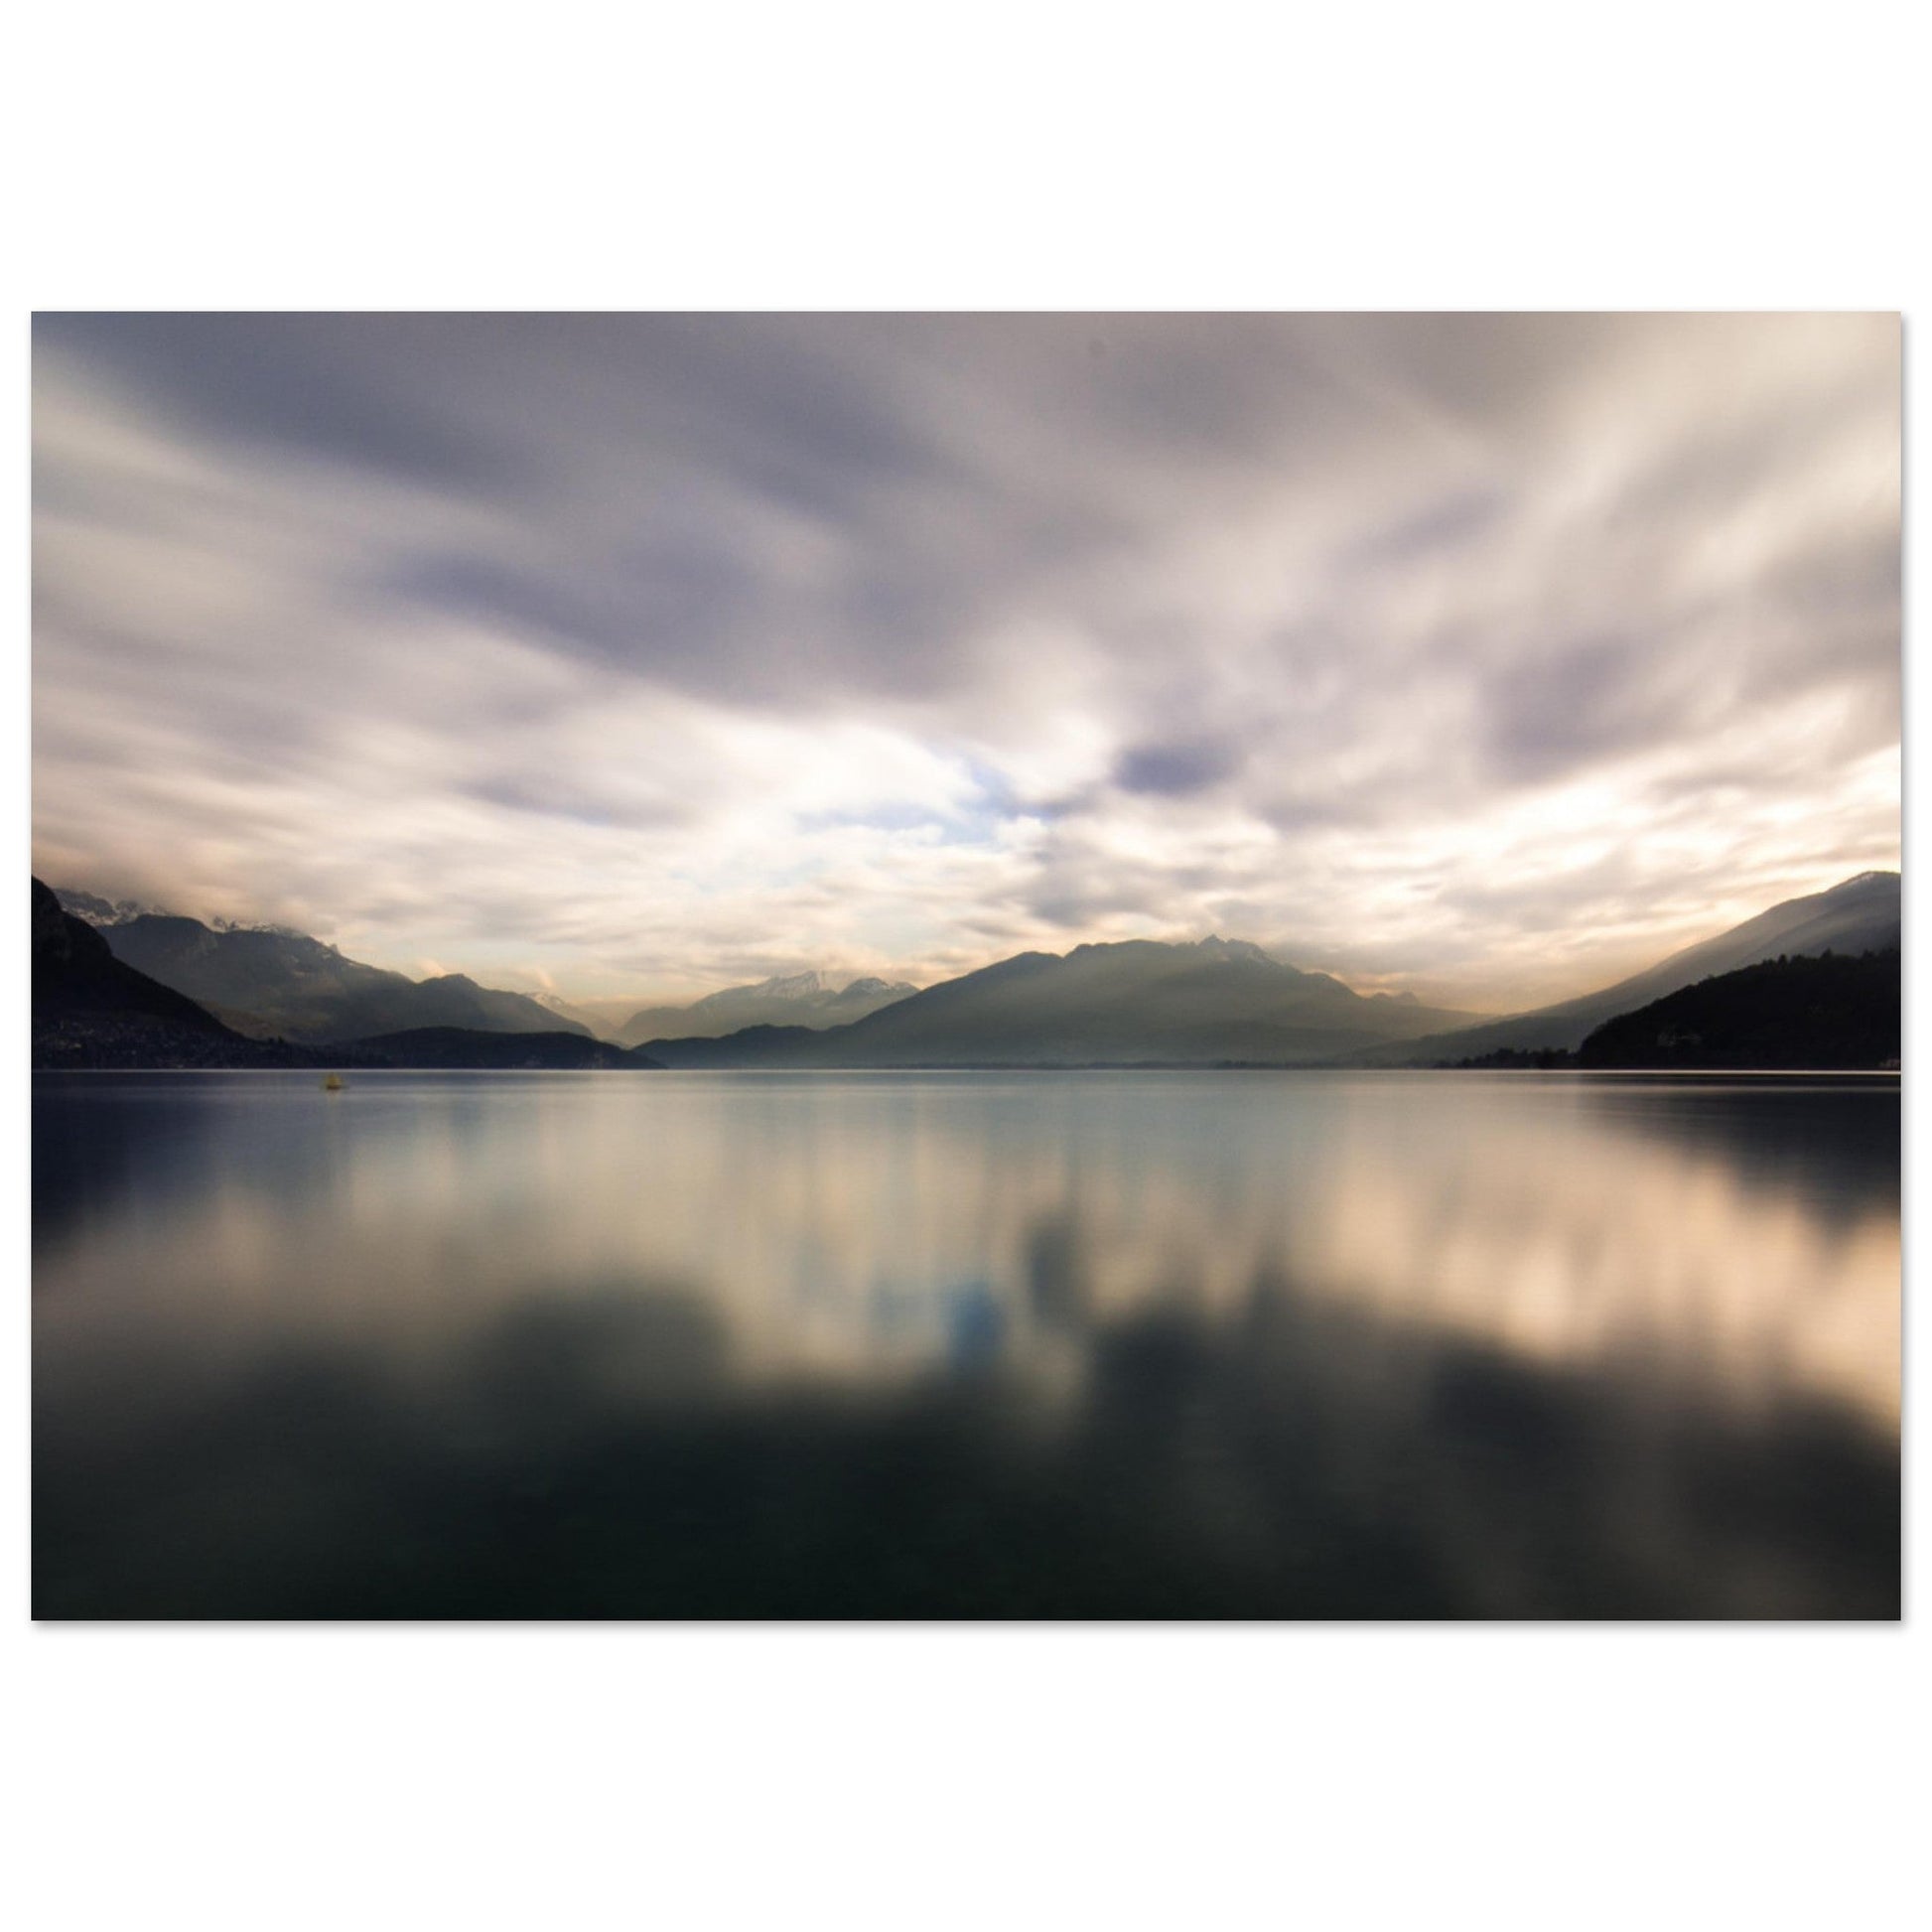 Vente Photo du lac d'Annecy, Haute-Savoie - Tableau photo paysage